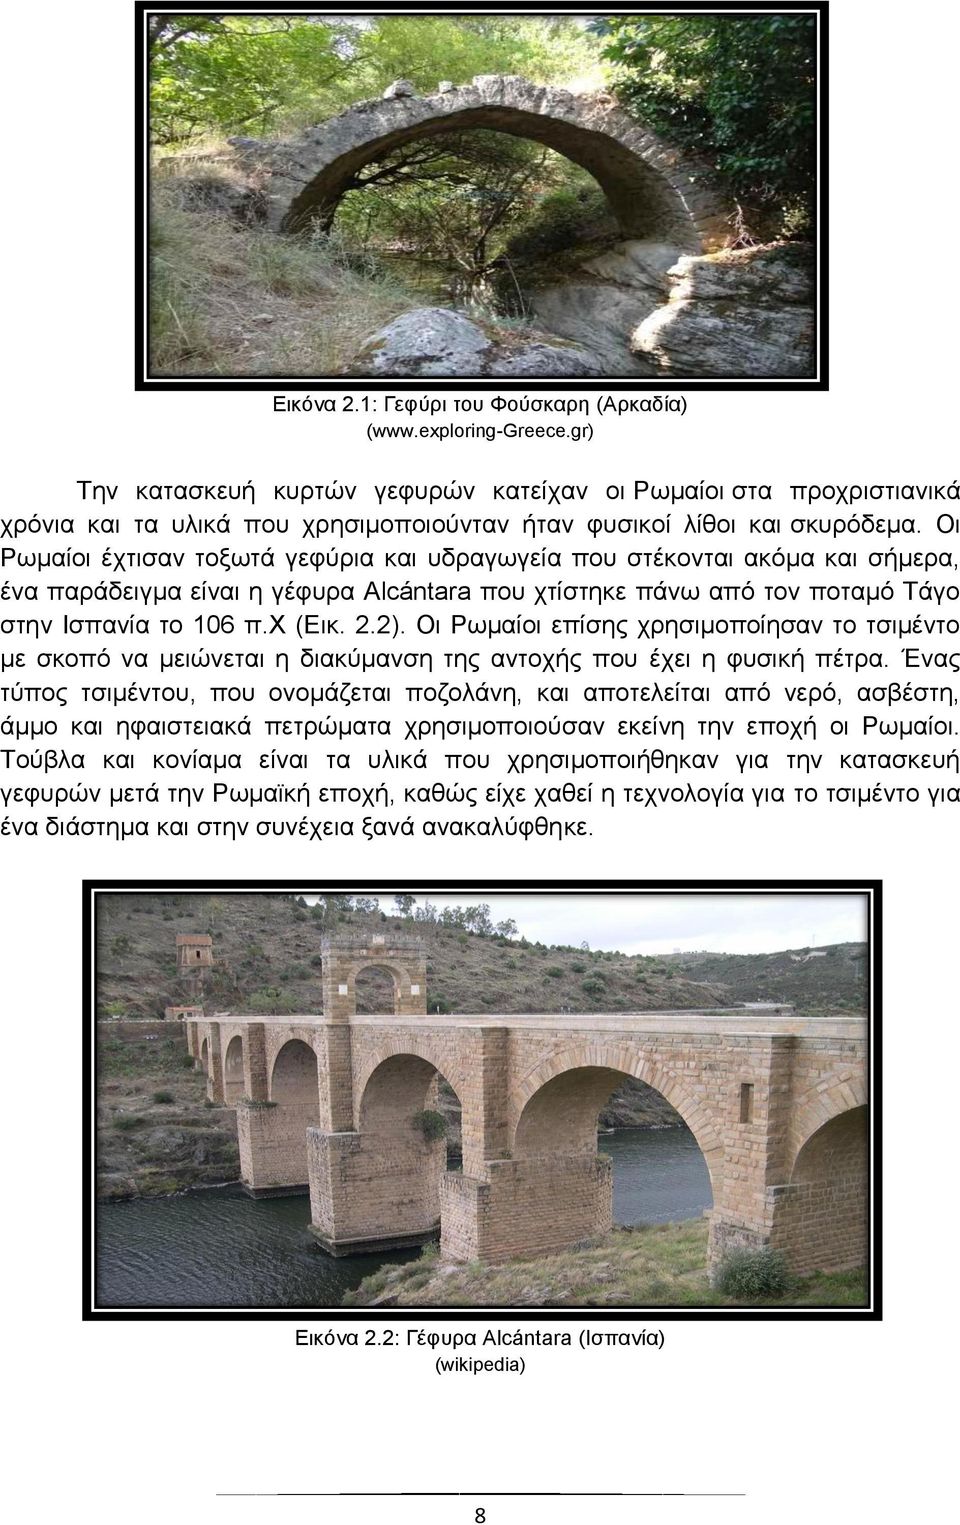 Οι Ρωμαίοι έχτισαν τοξωτά γεφύρια και υδραγωγεία που στέκονται ακόμα και σήμερα, ένα παράδειγμα είναι η γέφυρα Alántr που χτίστηκε πάνω από τον ποταμό Τάγο στην Ισπανία το π.χ (Εικ..).